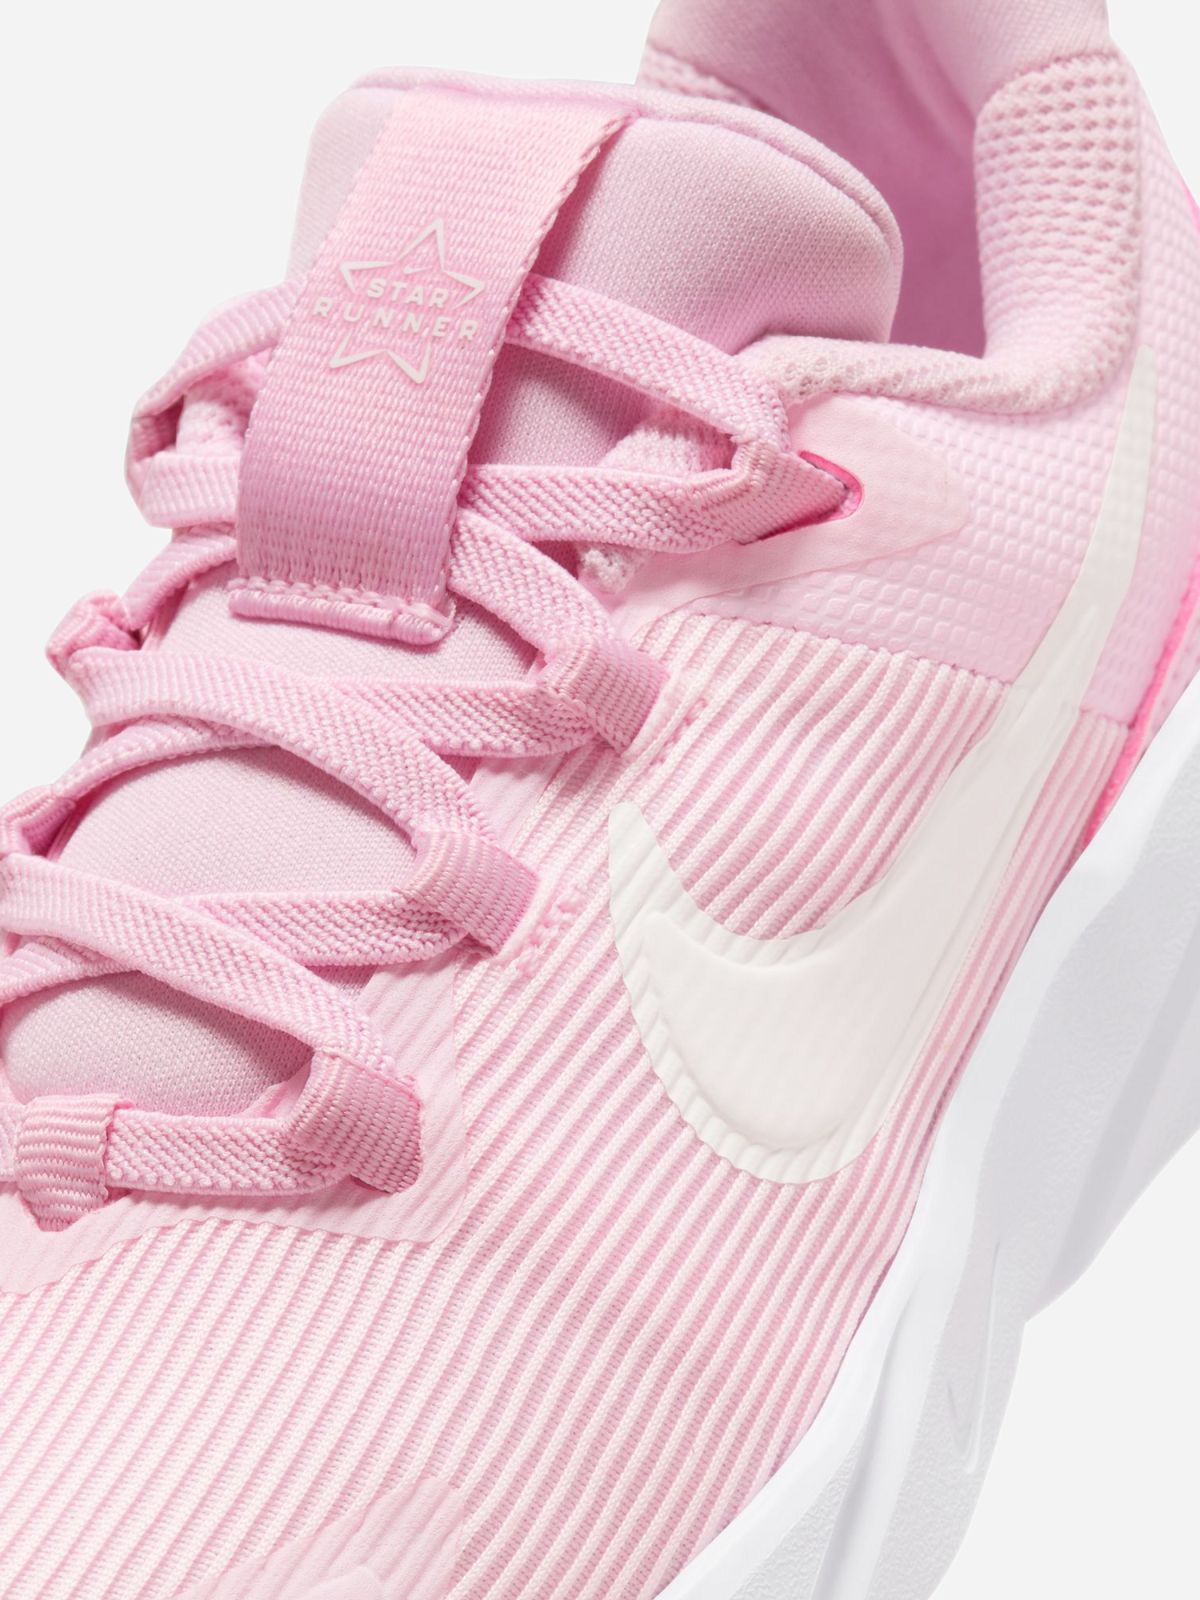  נעלי ריצה Nike Star Runner 4 / בנות של NIKE